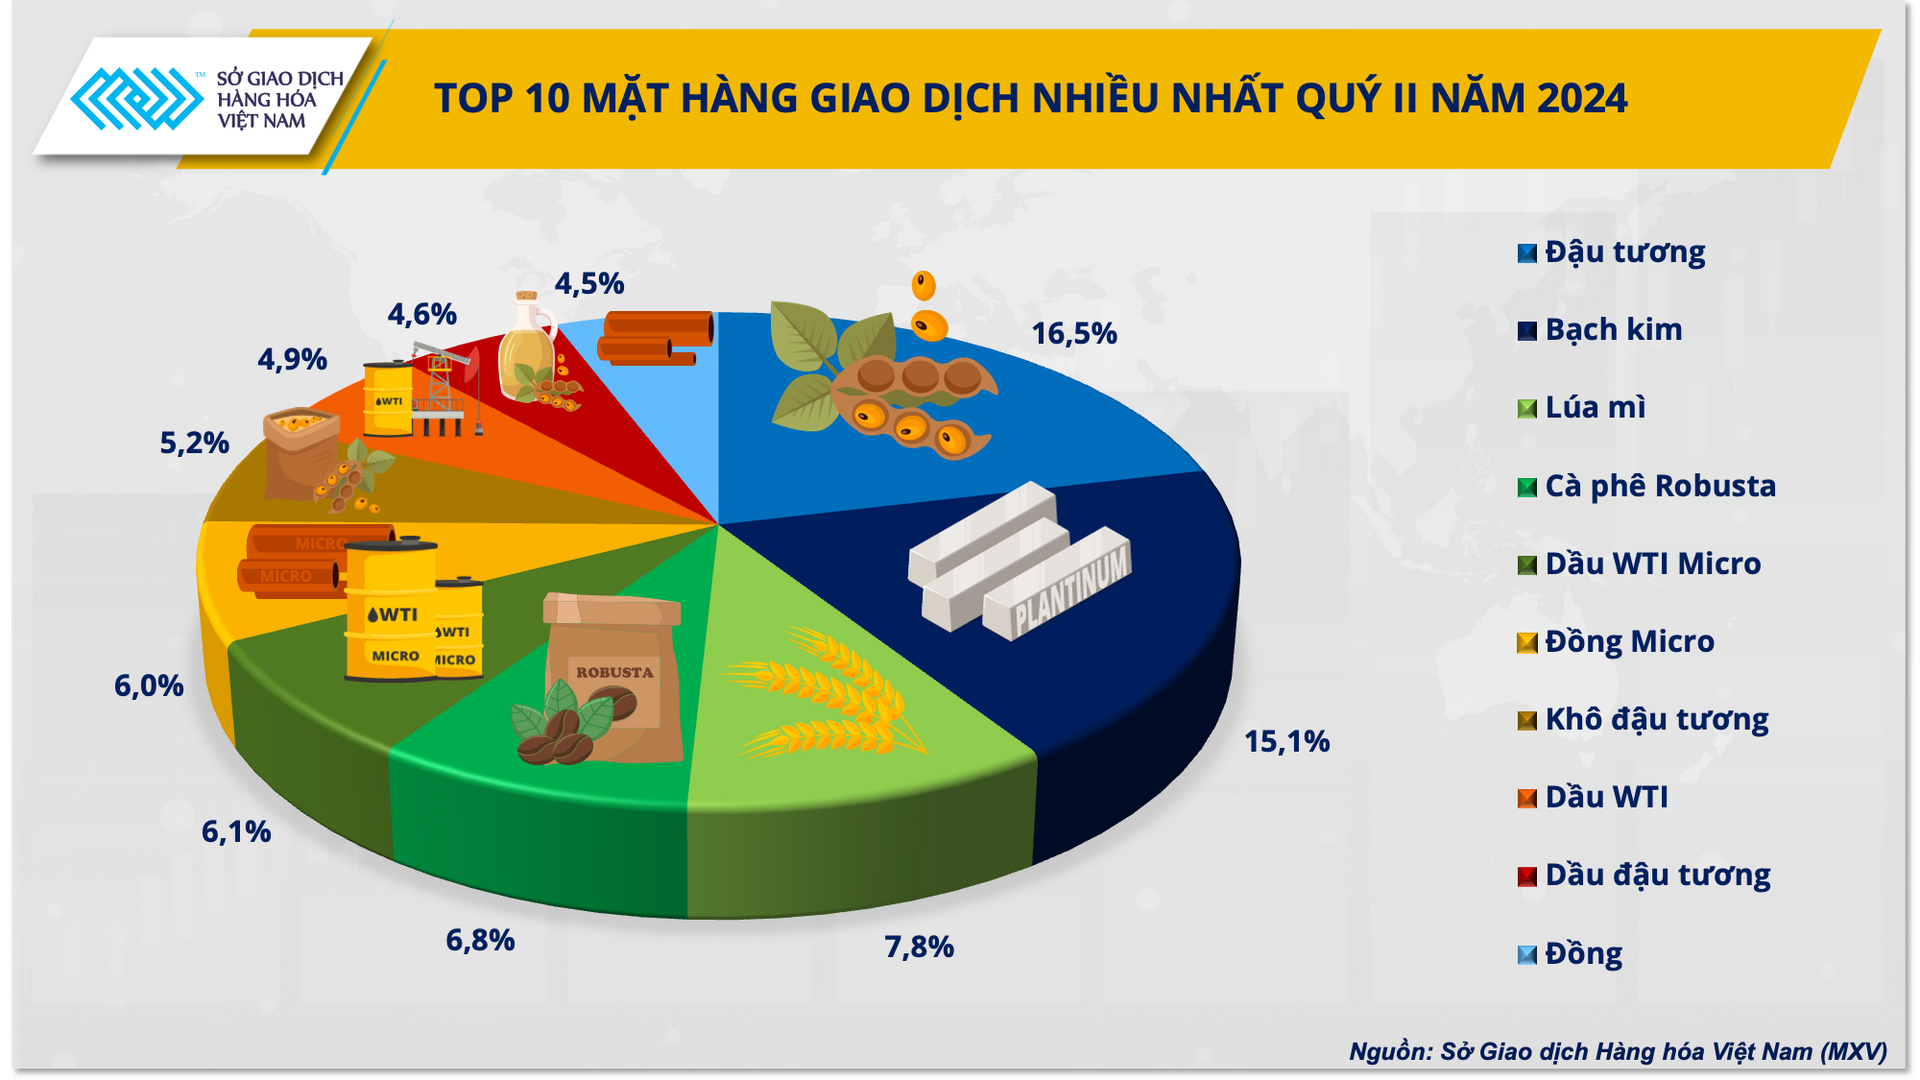 Top 10 sản phẩm được giao dịch nhiều nhất tại Việt Nam quý II/2024